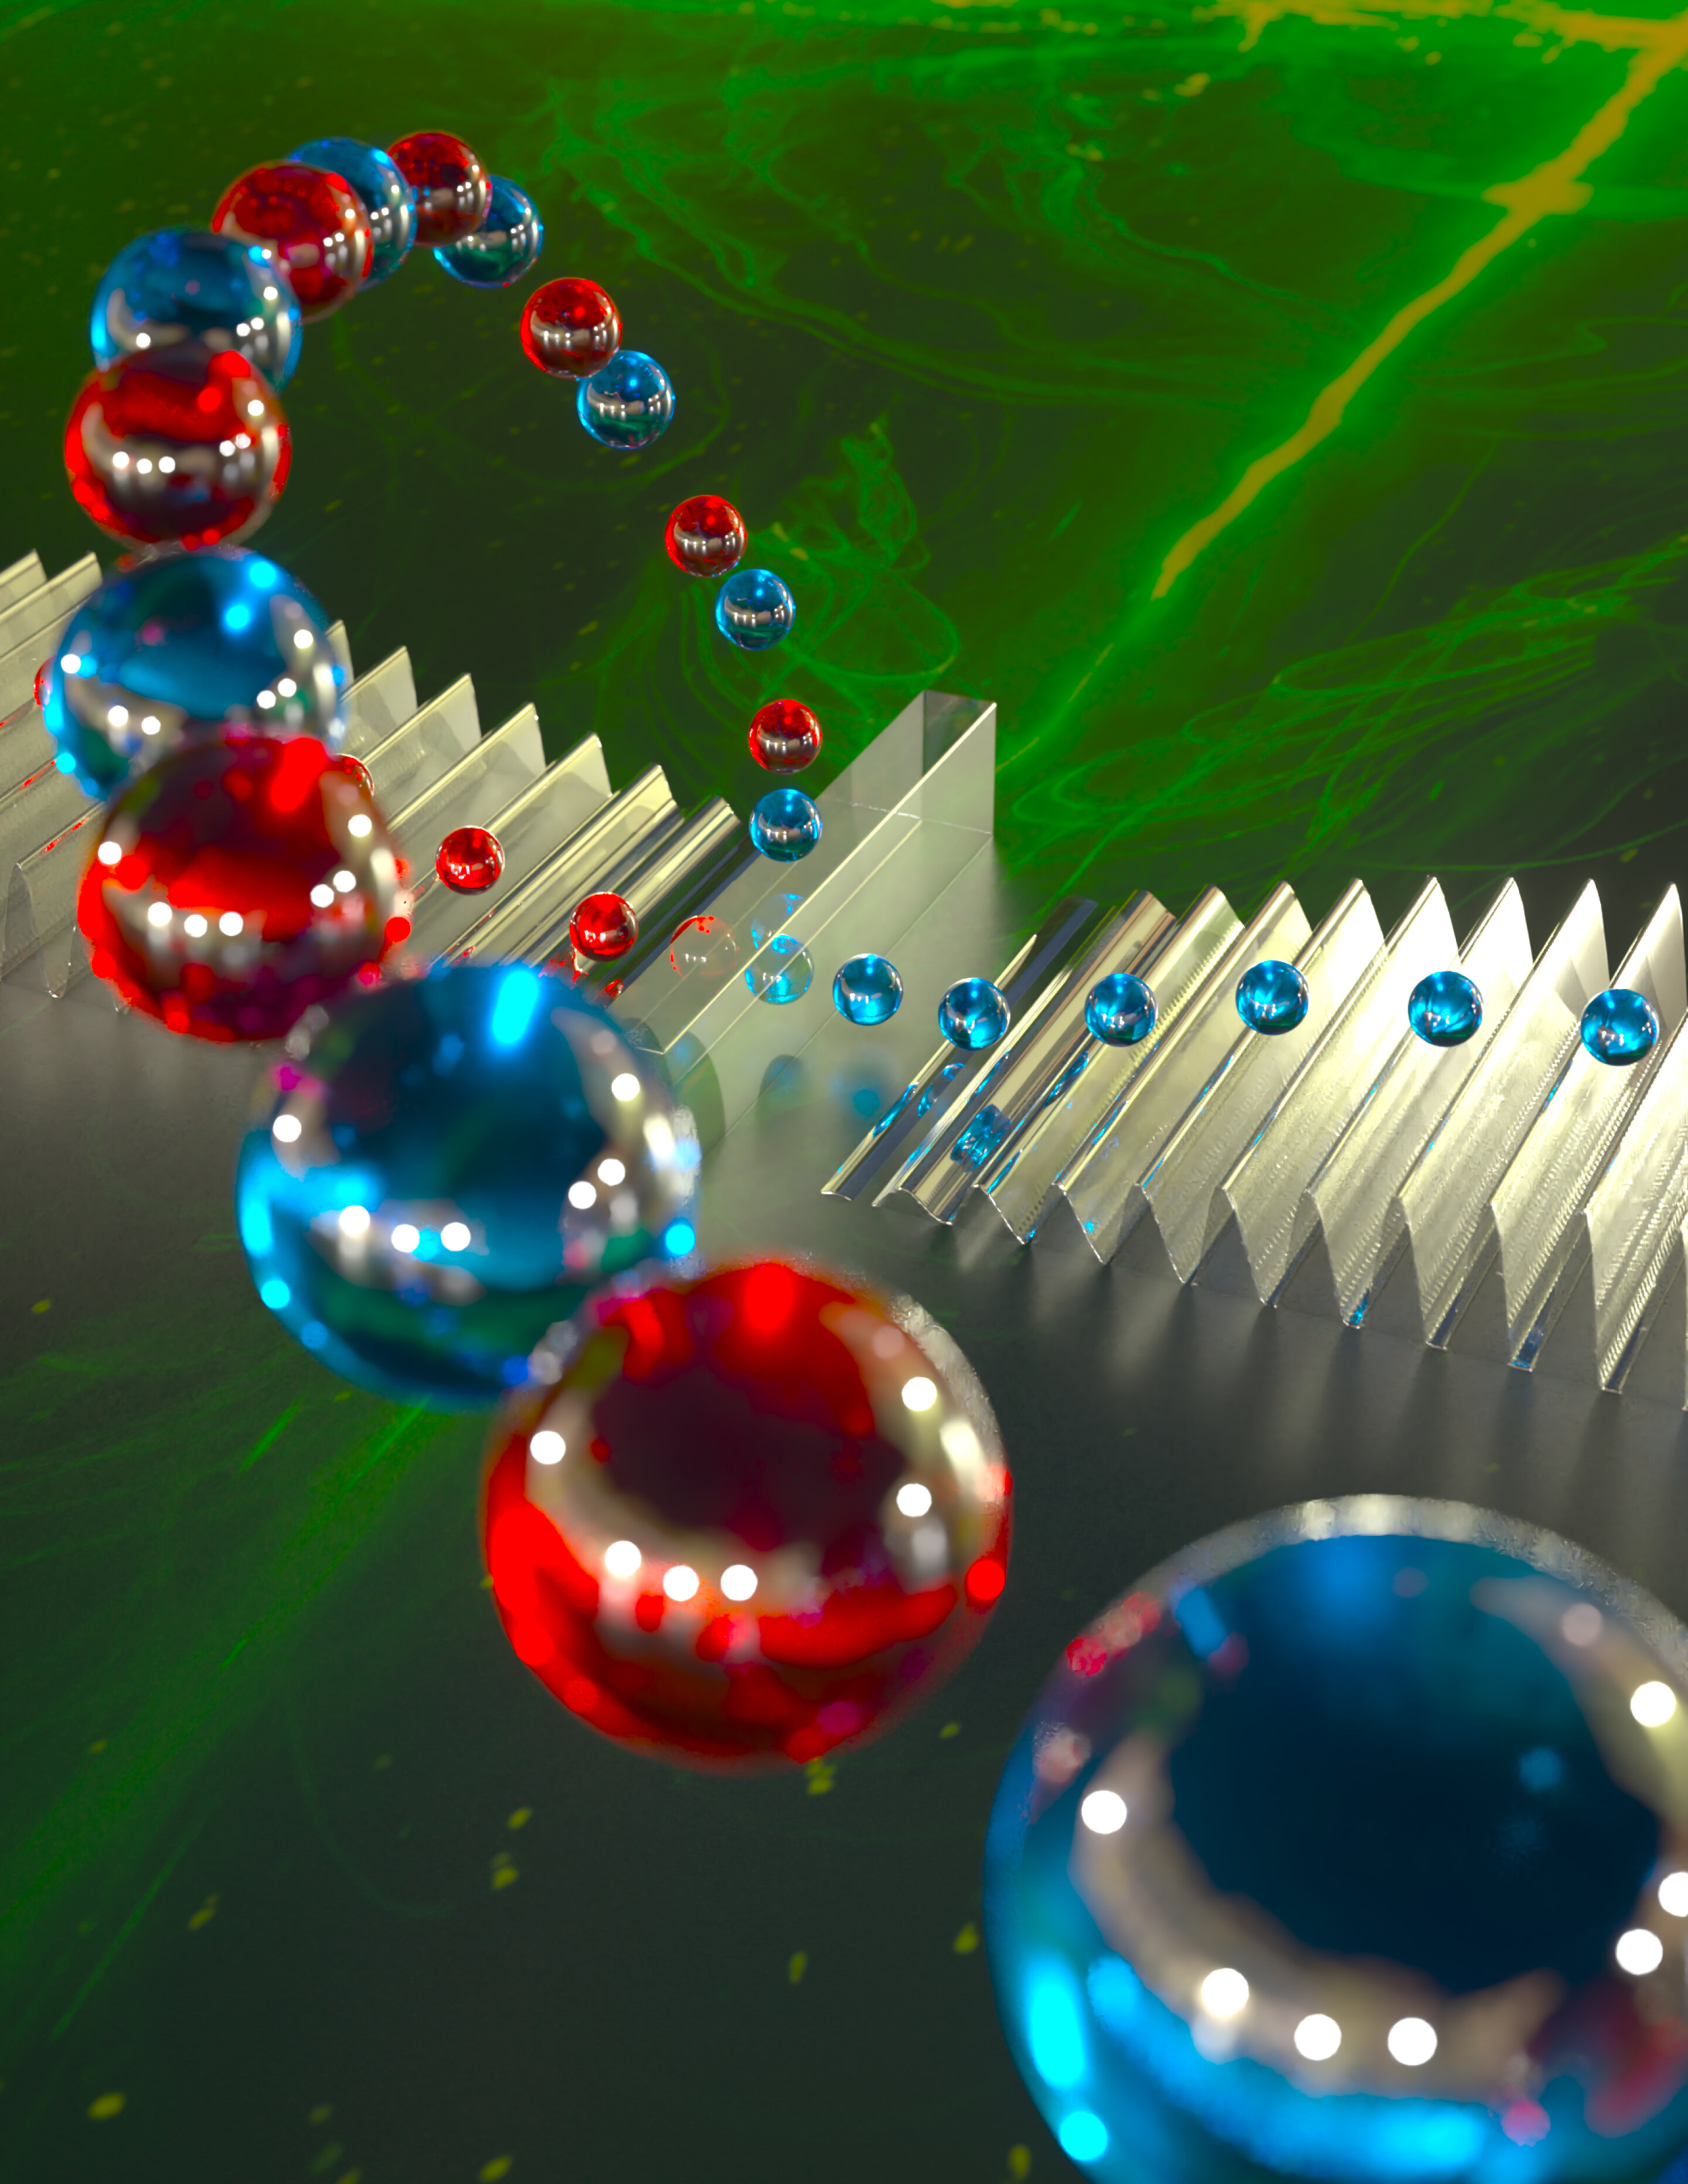 Die Aufspaltung von Phononen ist ein Schritt in Richtung eines neuen Typs von Quantencomputern